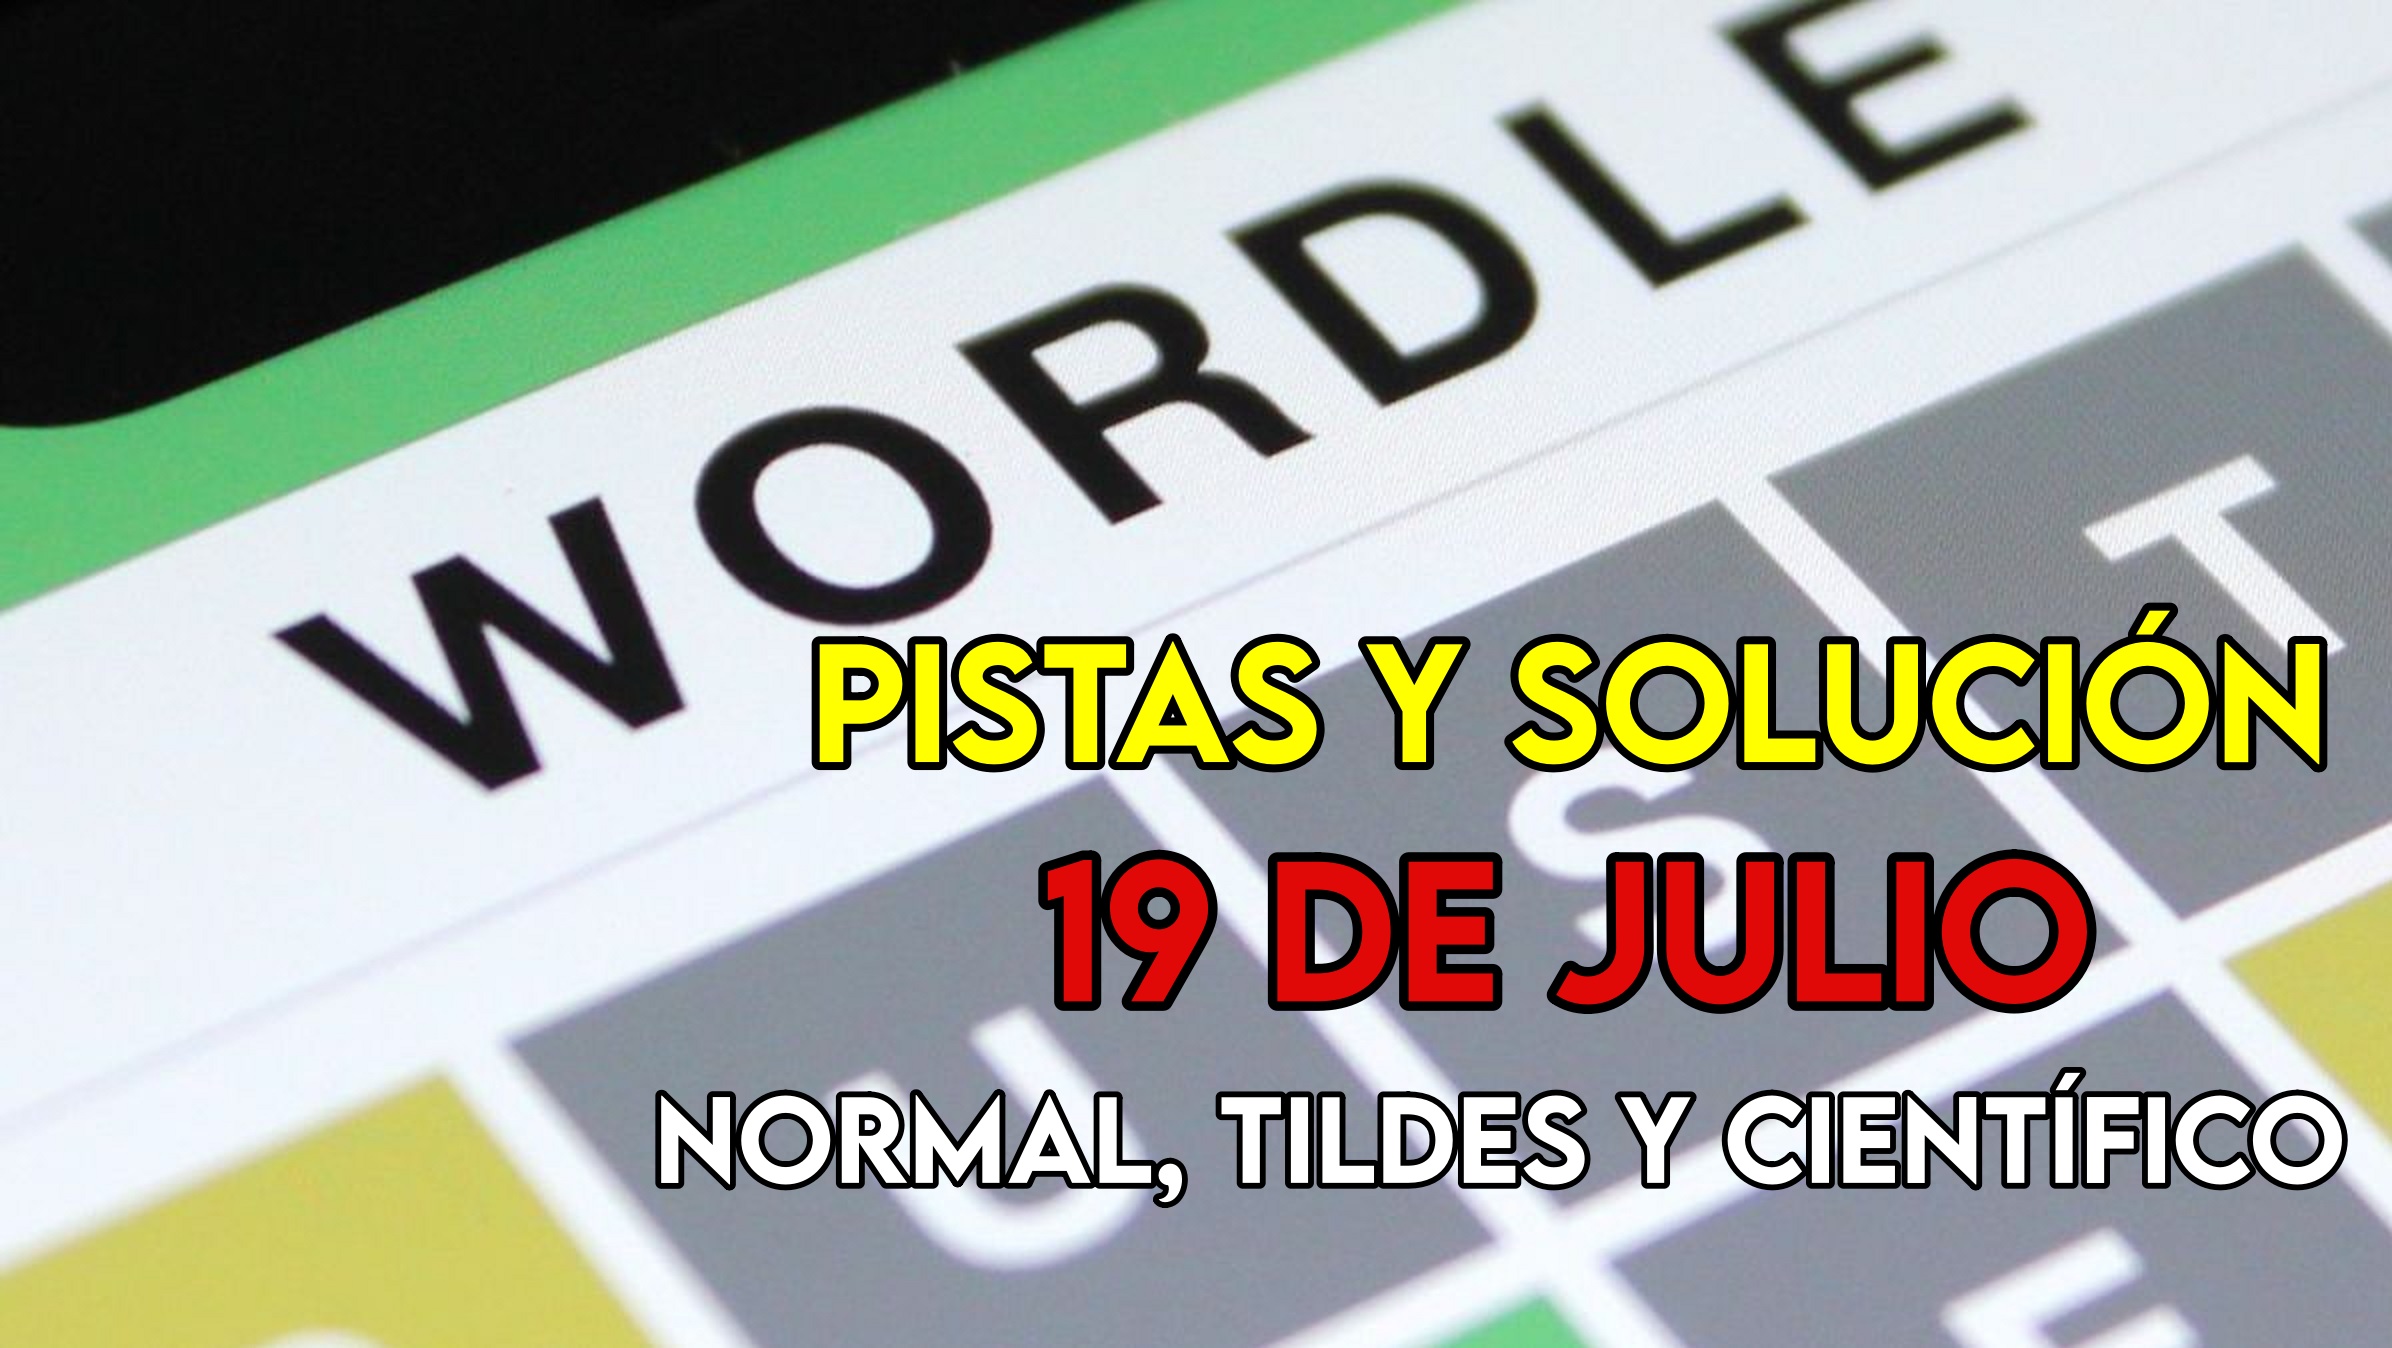 Wordle en español, científico y tildes para el reto de hoy 19 de julio: pistas y solución